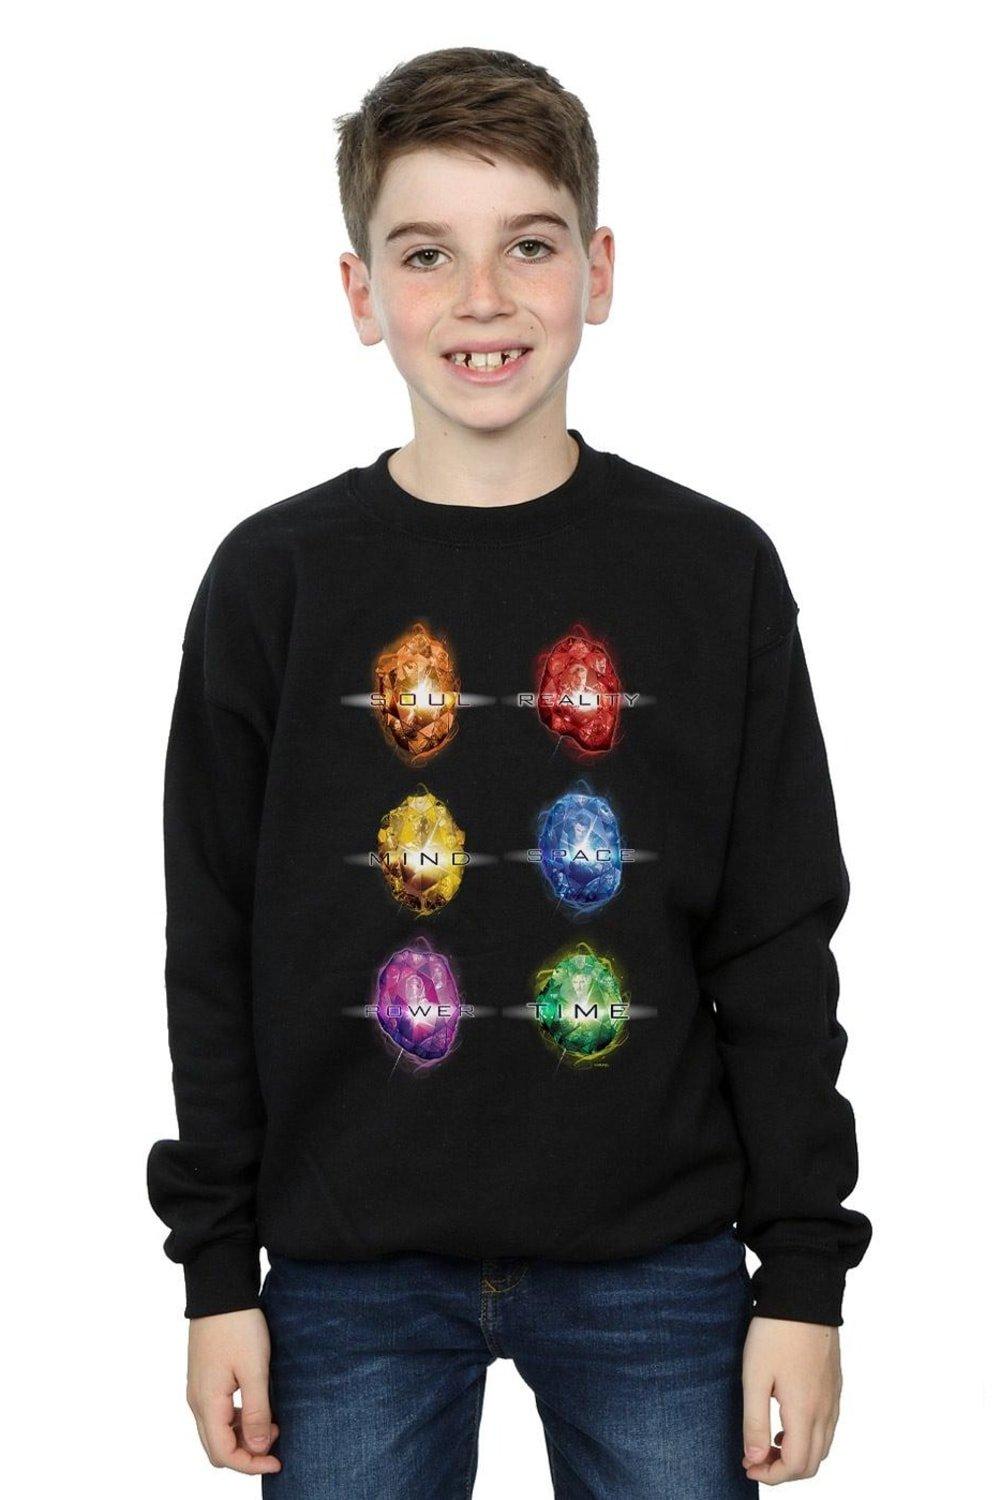 Avengers Infinity War Infinity Stones Sweatshirt